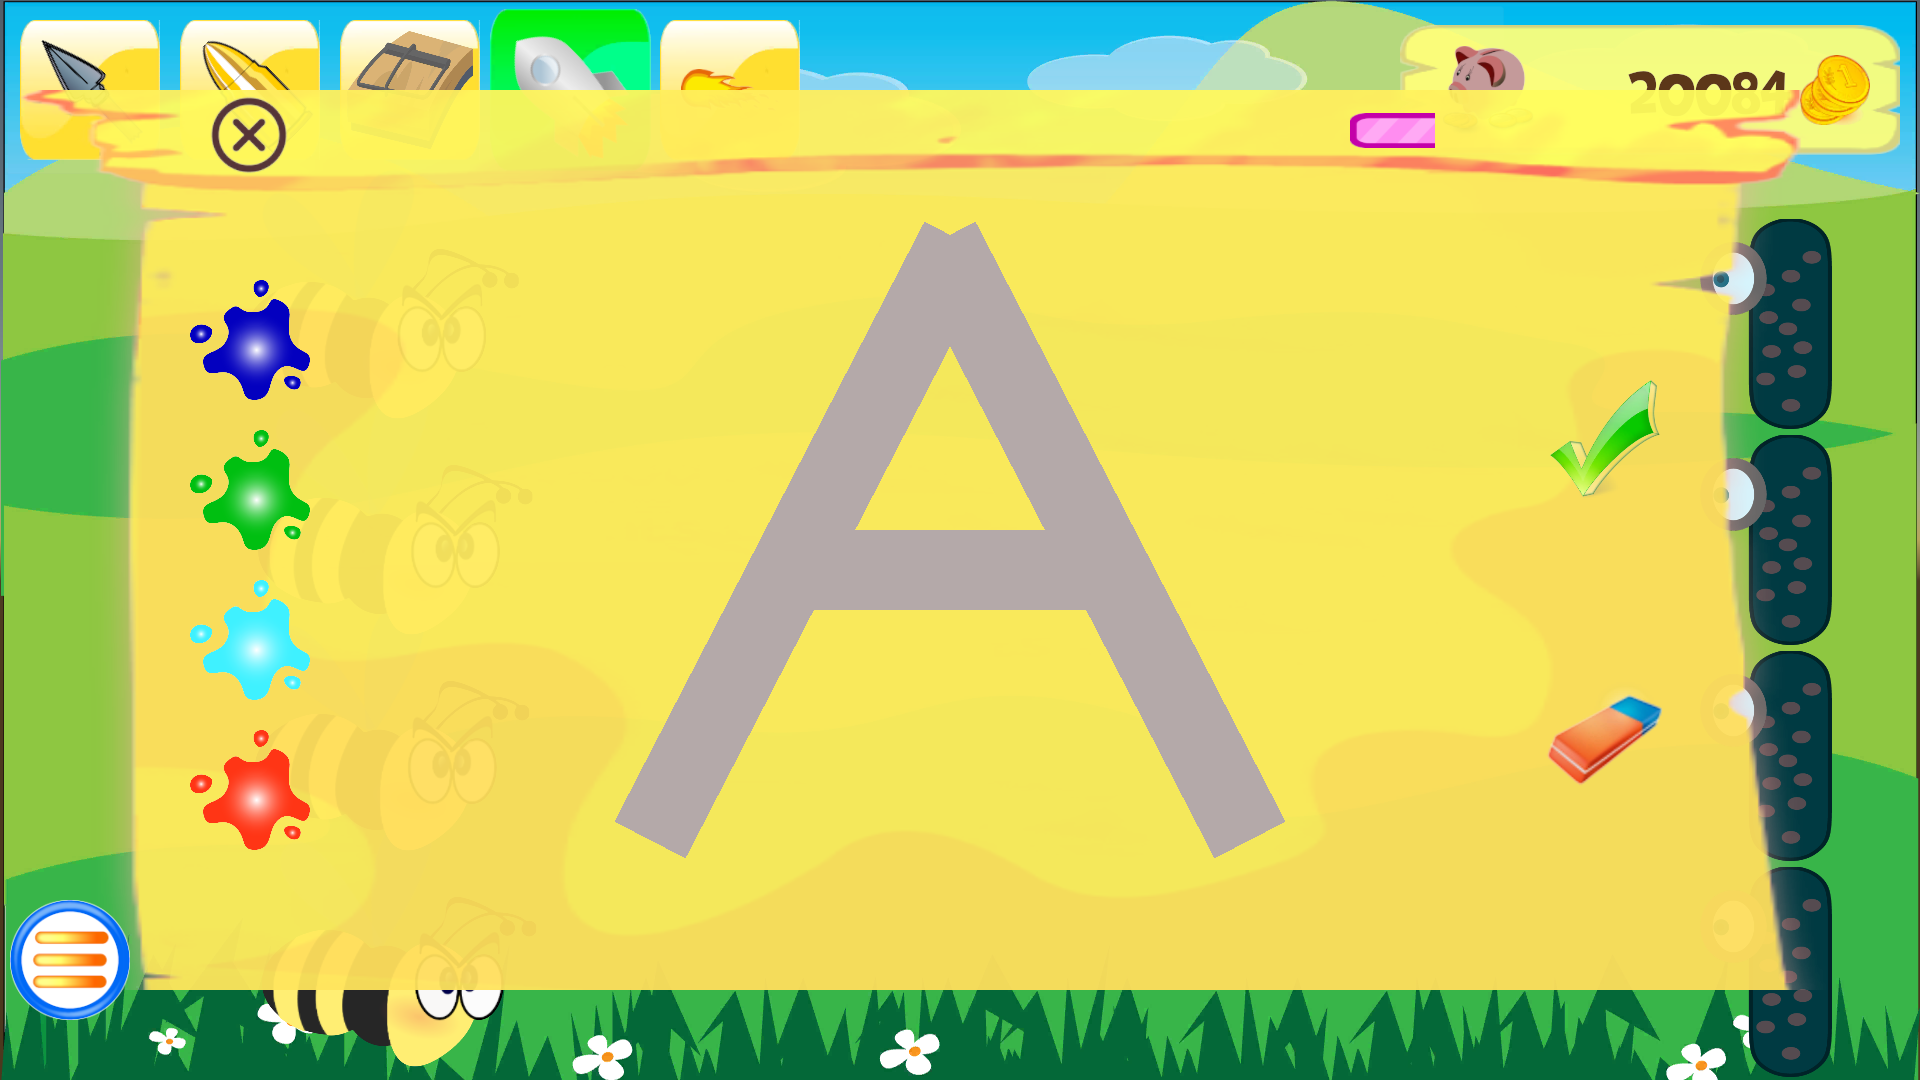 Screenshot 1 of Trò chơi truy tìm chữ cái 4.6